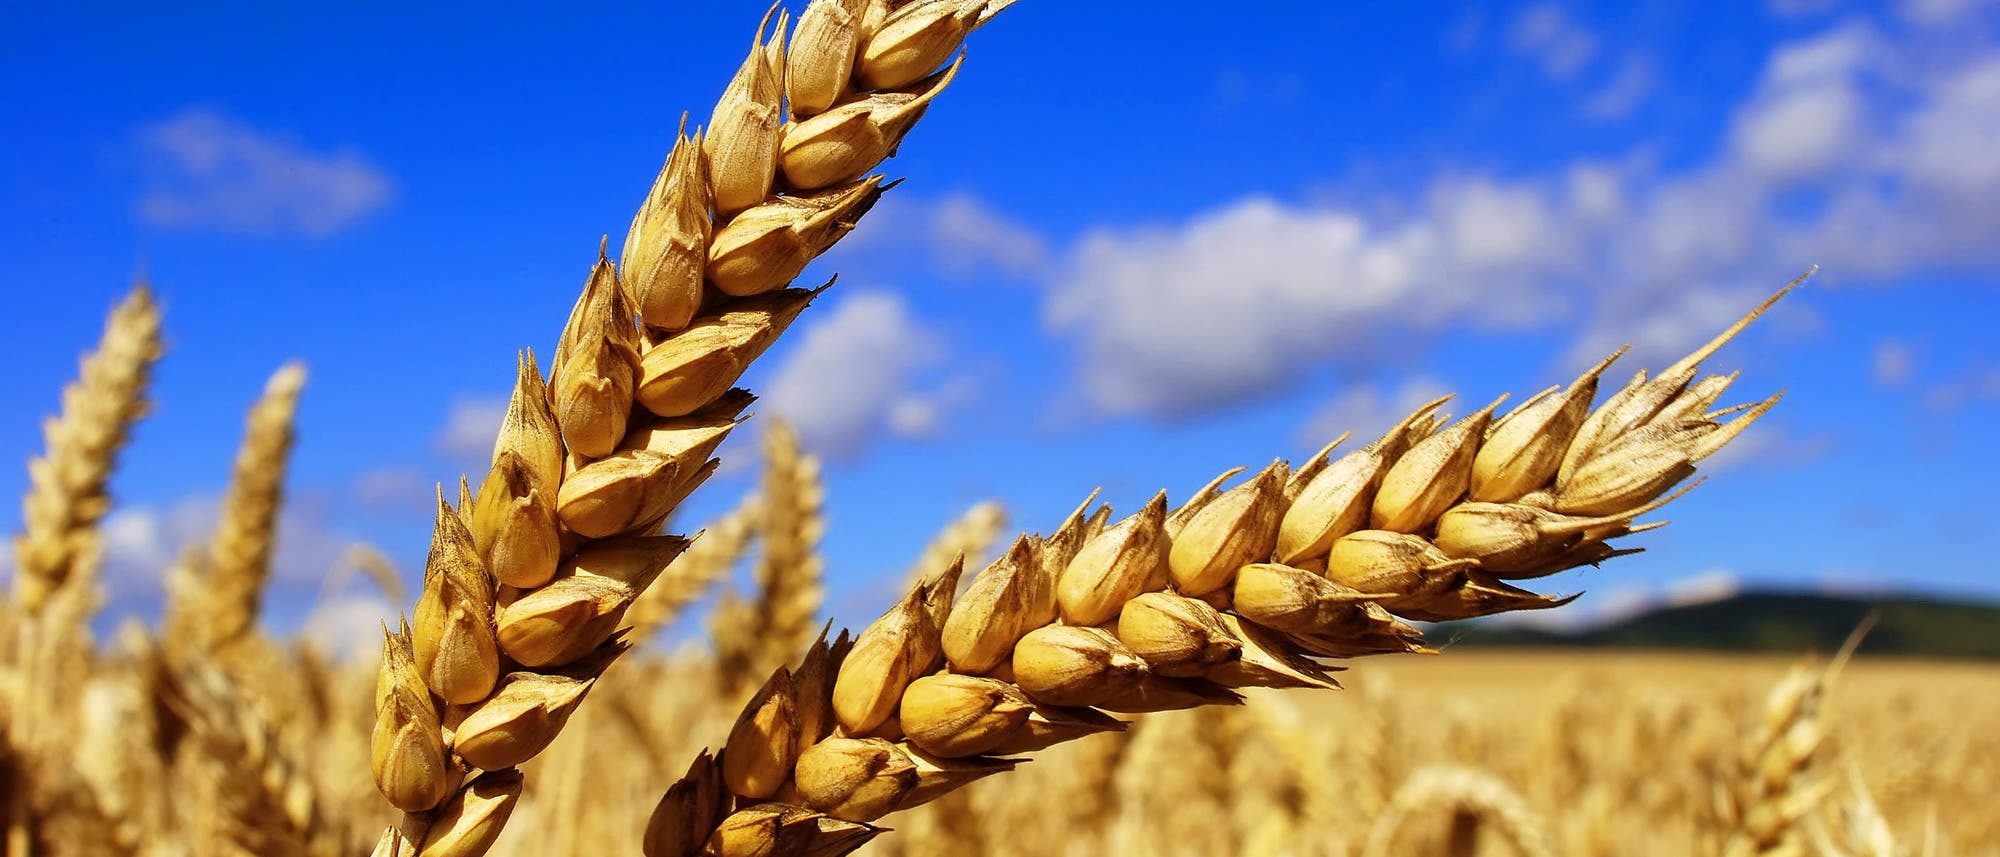 Getreideähren in Nahaufnahme, im Hintergrund das Getreidefeld in Unschärfe und ein strahlend-blauer Himmel.